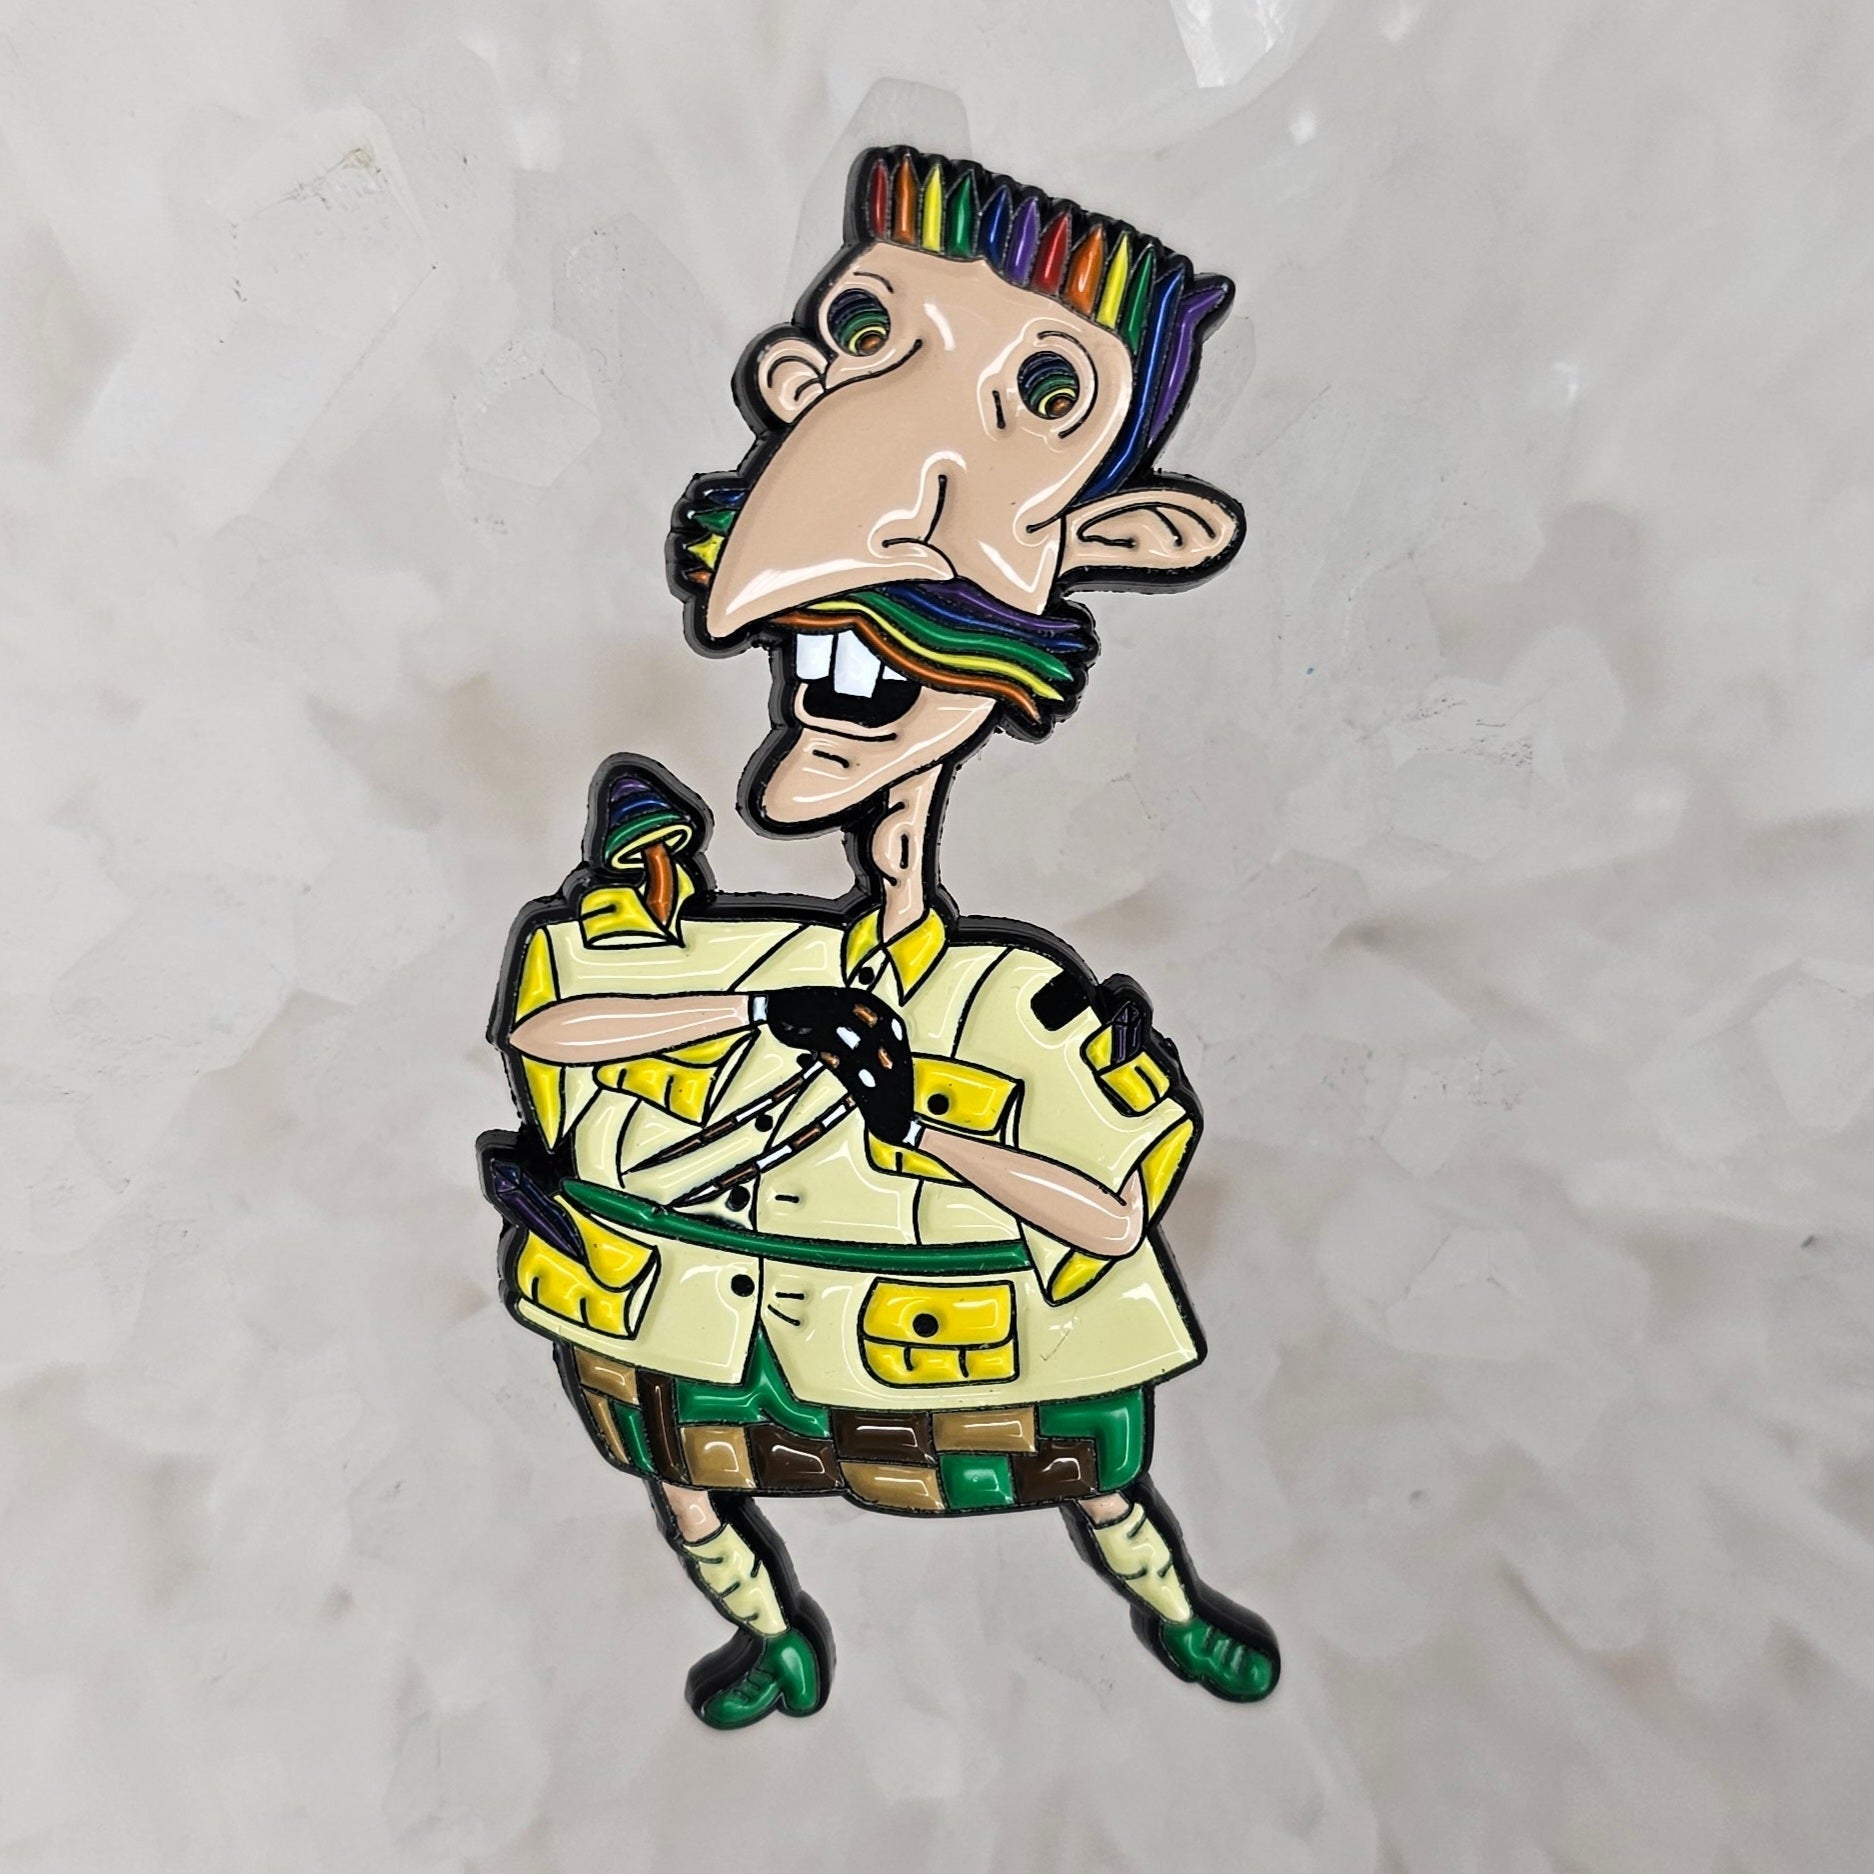 5 Pack - Festie Freak Nigel Thornberry 90s Cartoon Gloving Flow Enamel Pins Hat Pins Bulk Lapel Pin Brooch Badge Festival Pin